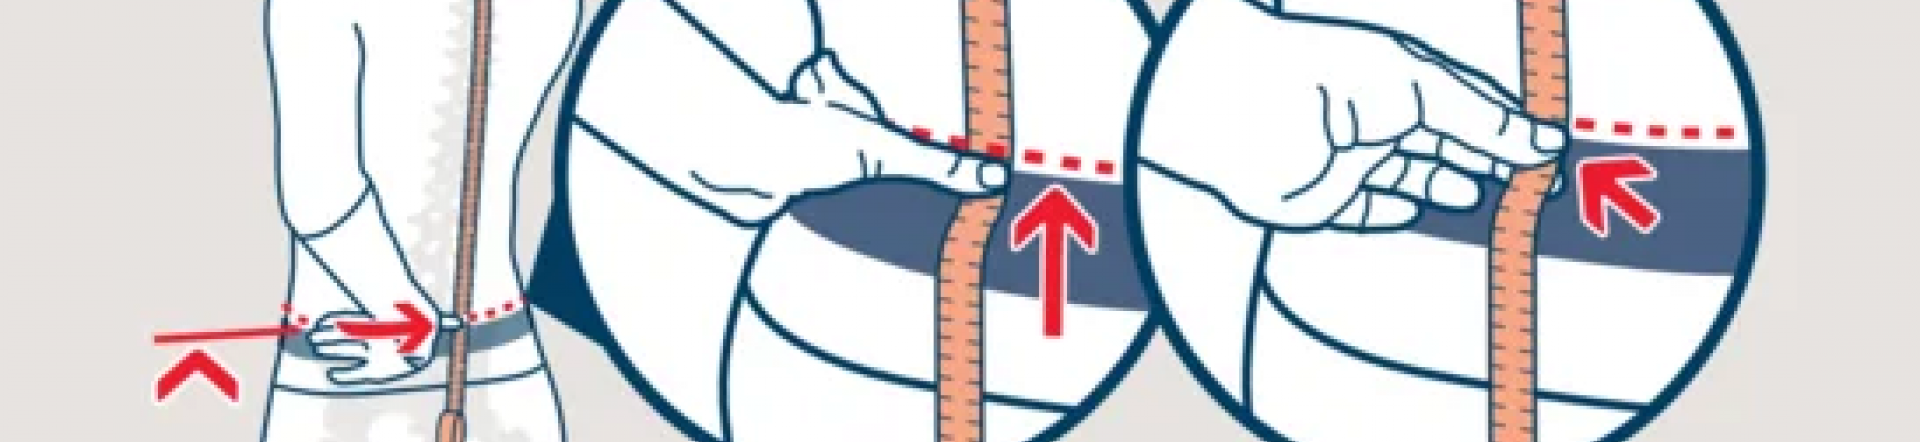 Kako izmeriti dolžino hrbta?